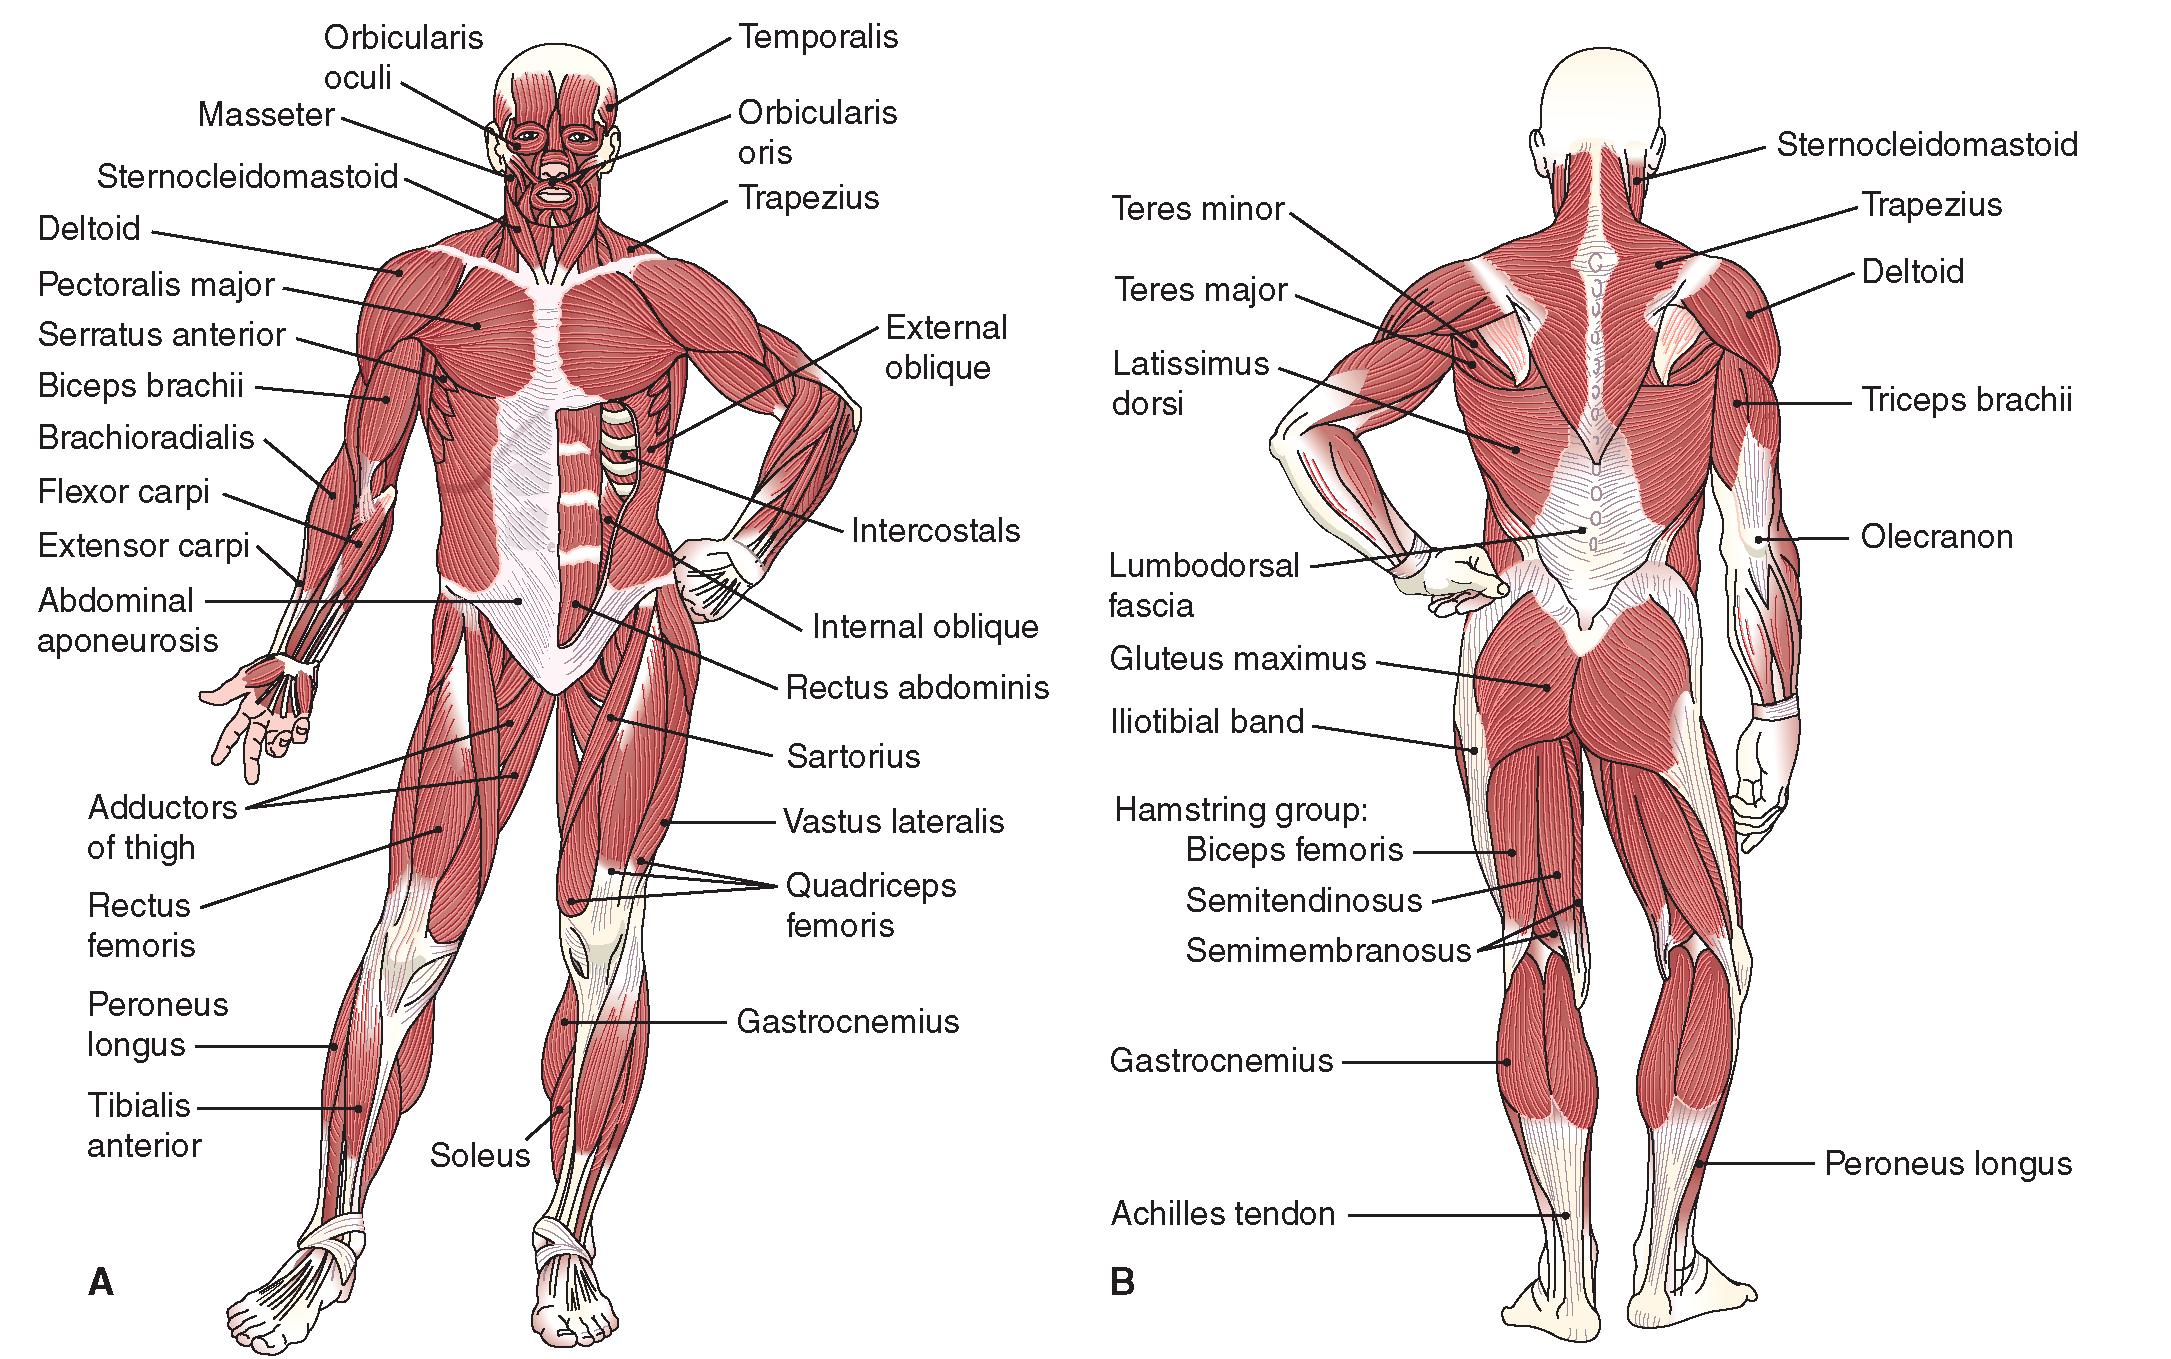 Описание мышц. Мышцы человека спереди и сзади. Строение мышц человека спереди и сзади. Мышцы туловища и конечностей спереди. Поверхностные скелетные мышцы вид спереди и сзади.